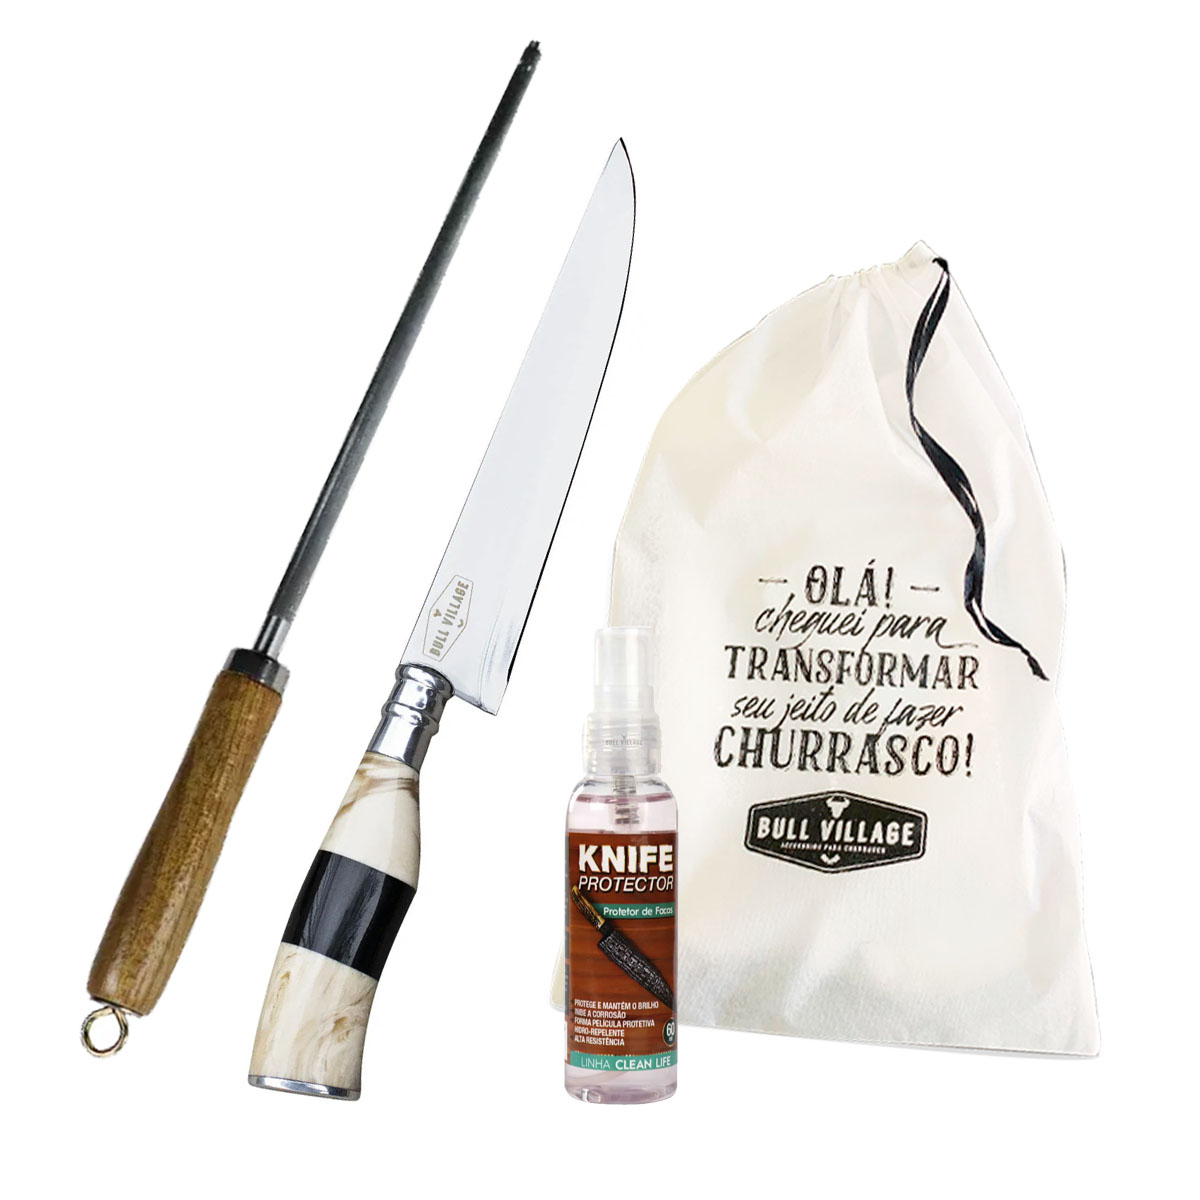 Kit DENVMARK -  Faca Artesanal Para Churrasco Inox 7 Pol. Com Cabo Em Chifre e Osso + Chaira tradicional com Cabo em madeira + Knife Protector